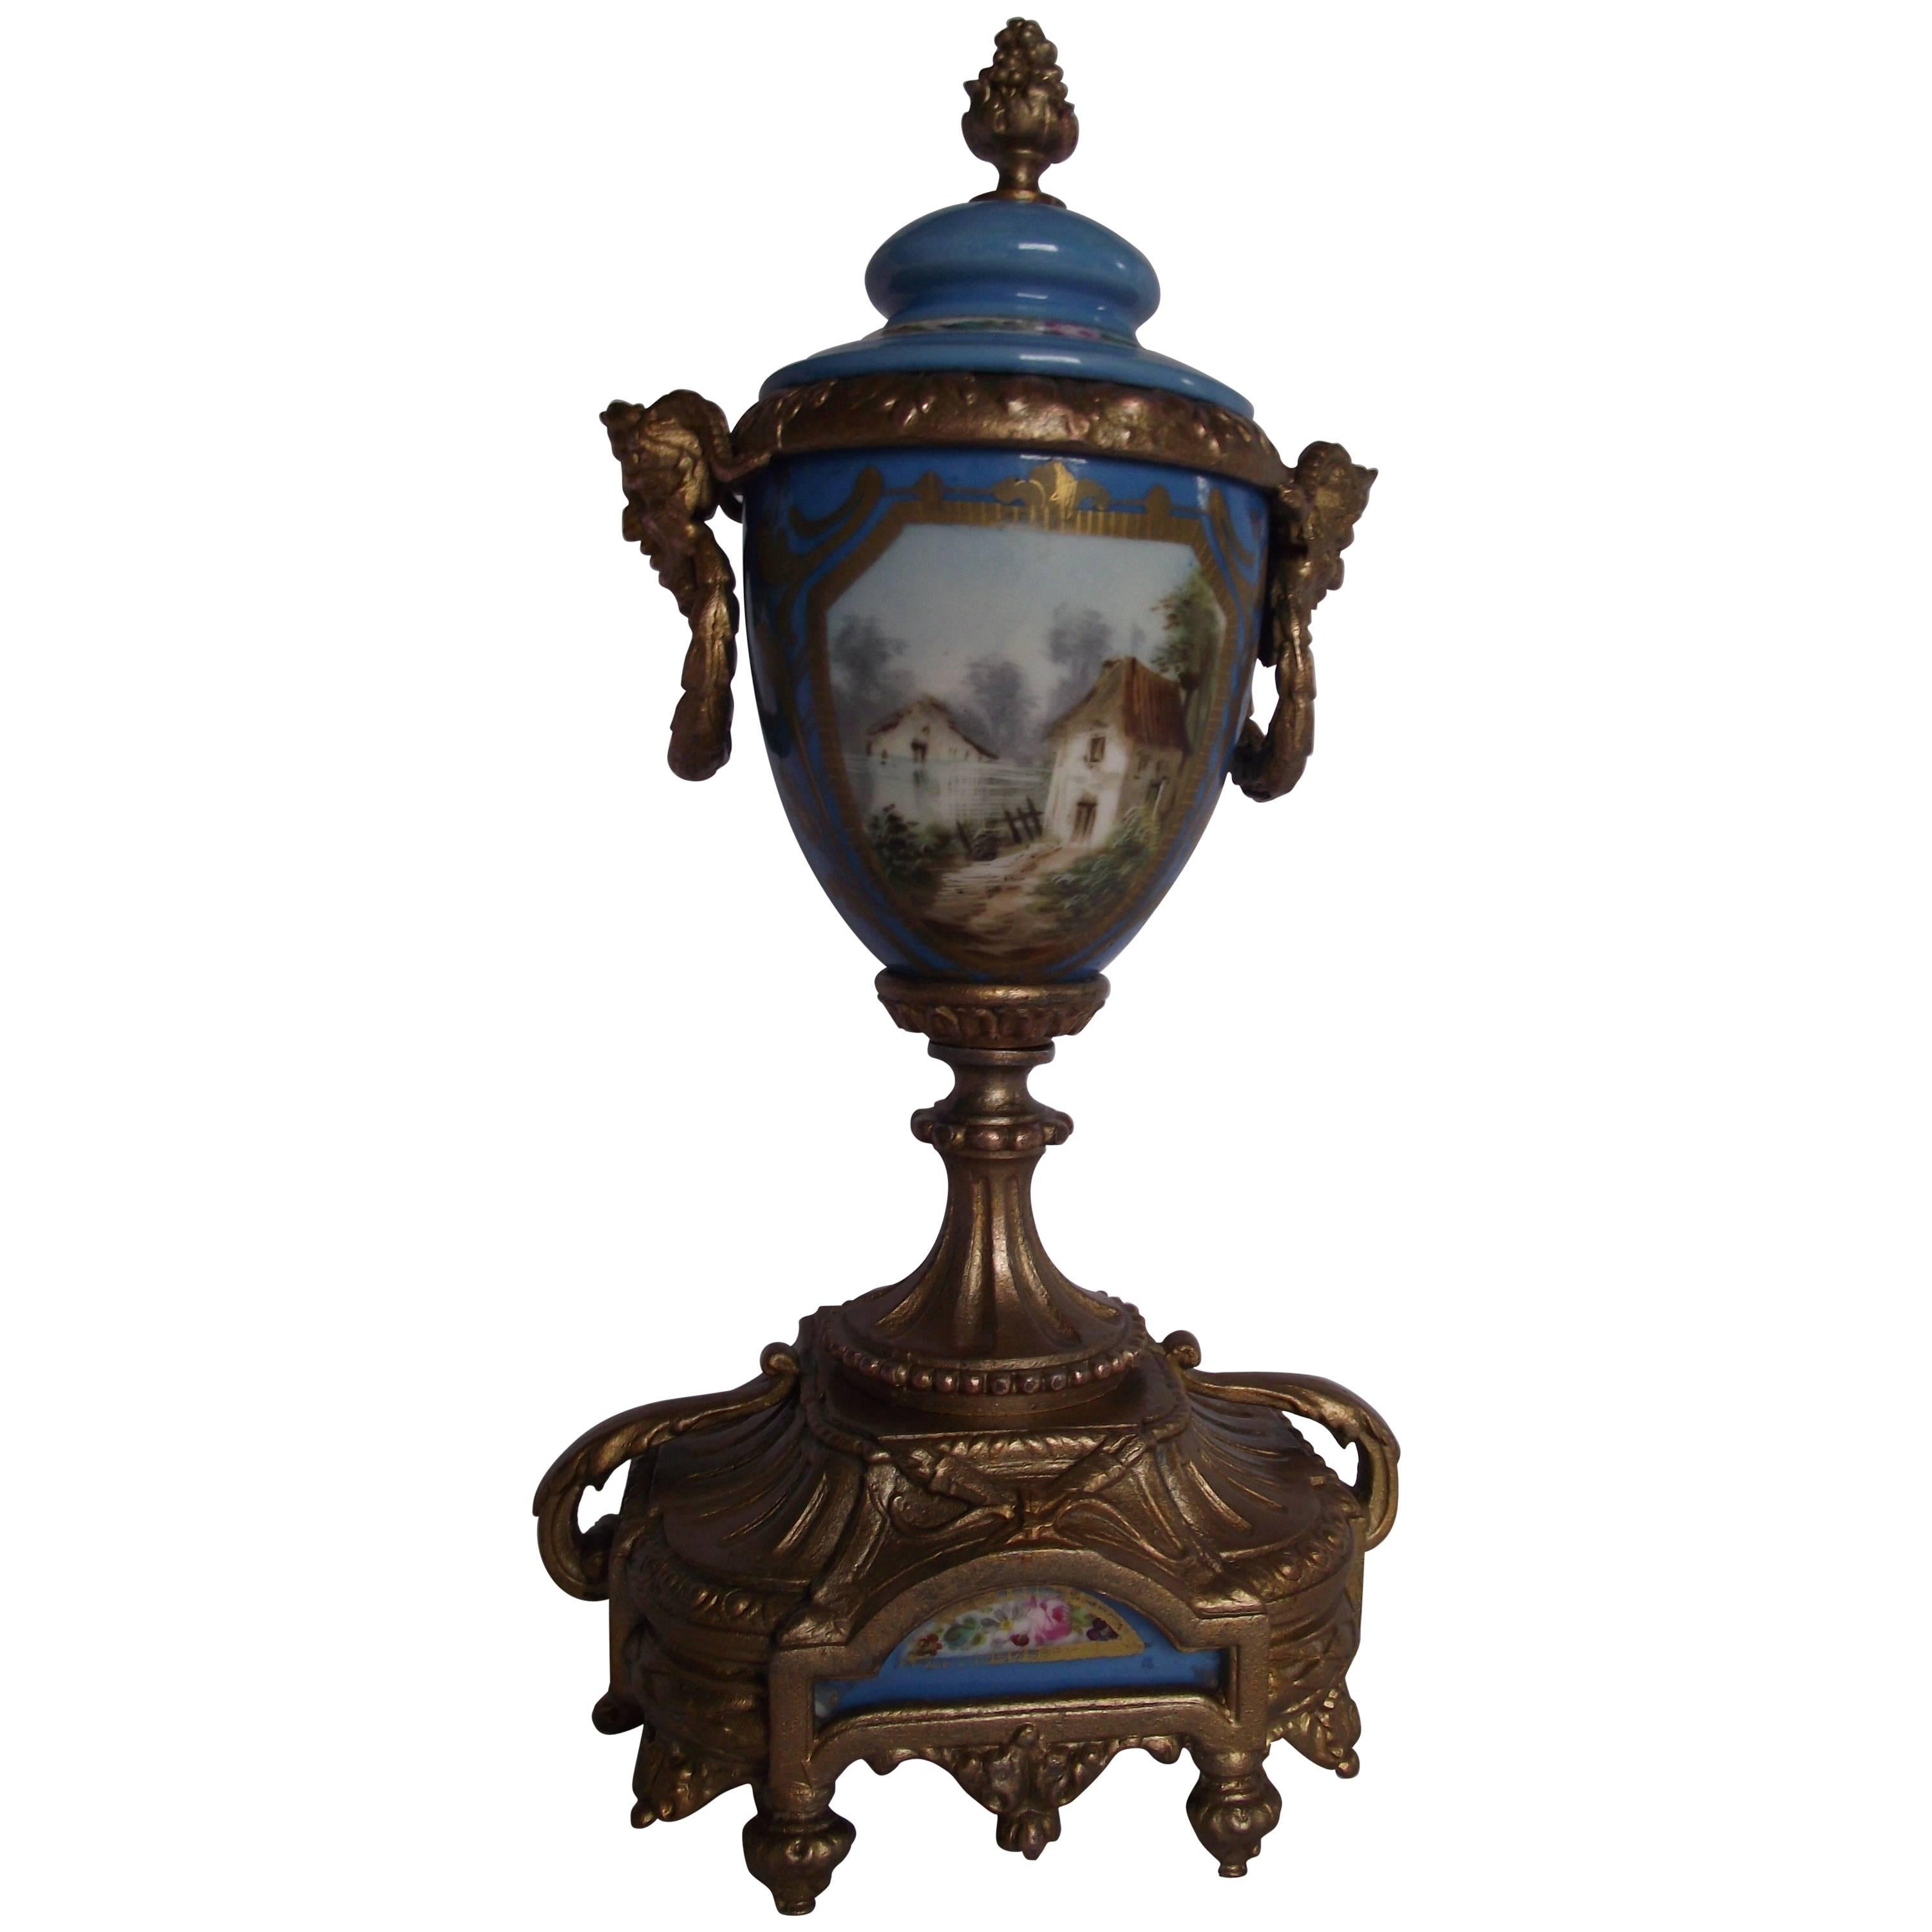 Sèvres Style Urn, Hand-Painted Porcelain Gilt Metal Urn